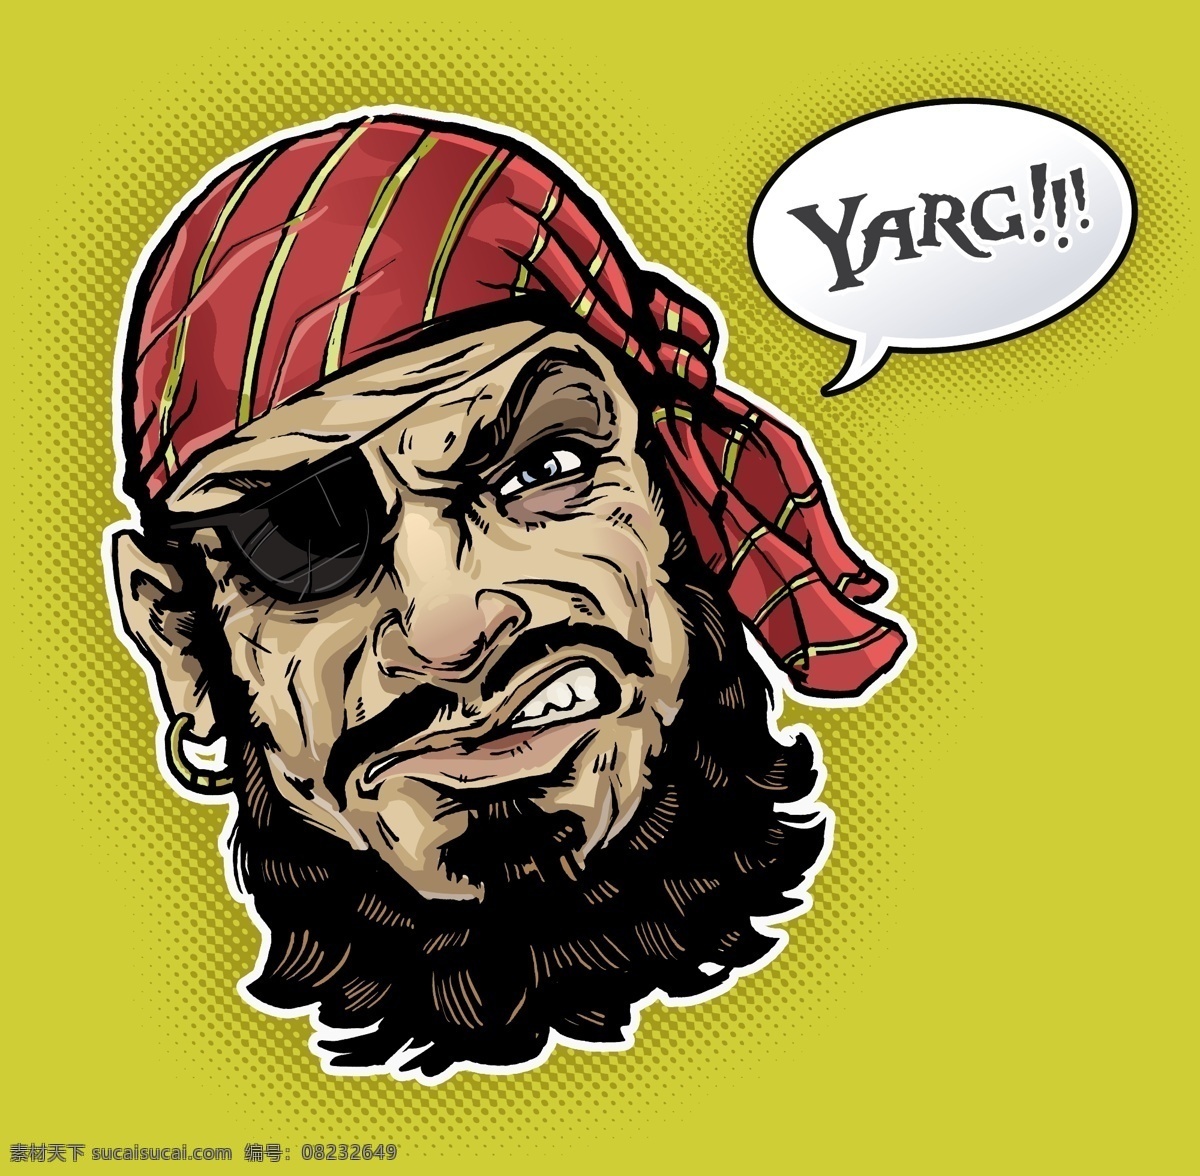 海盗水手 海盗 海盗图标 盗贼 海盗标志 海盗符号 海盗元素 海盗文化 其他图标 标志图标